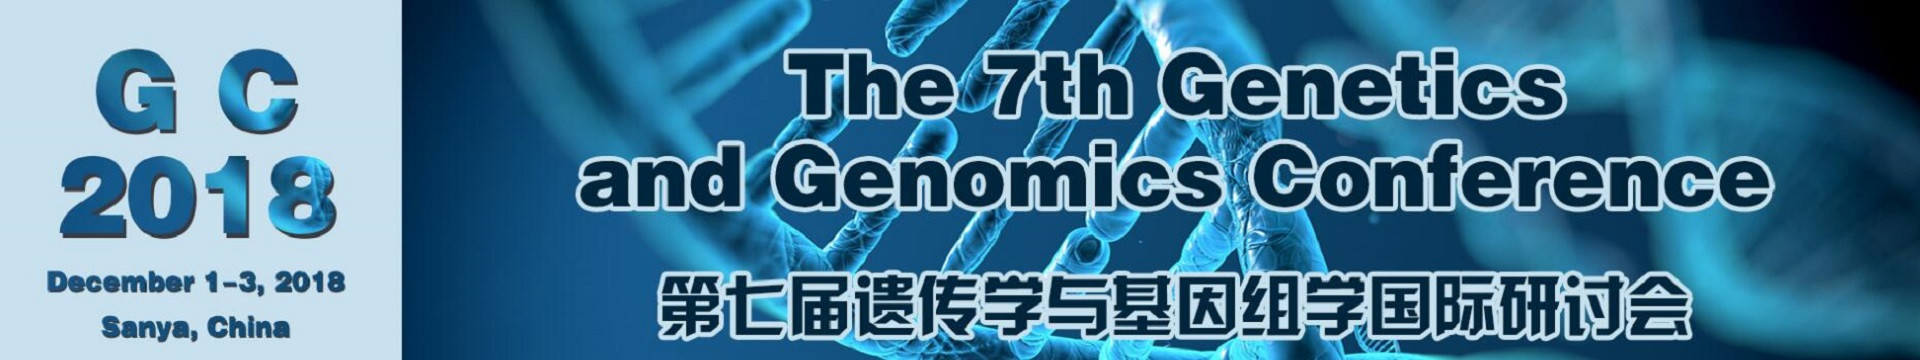 第七届遗传学与基因组学国际研讨会(GC 2018)